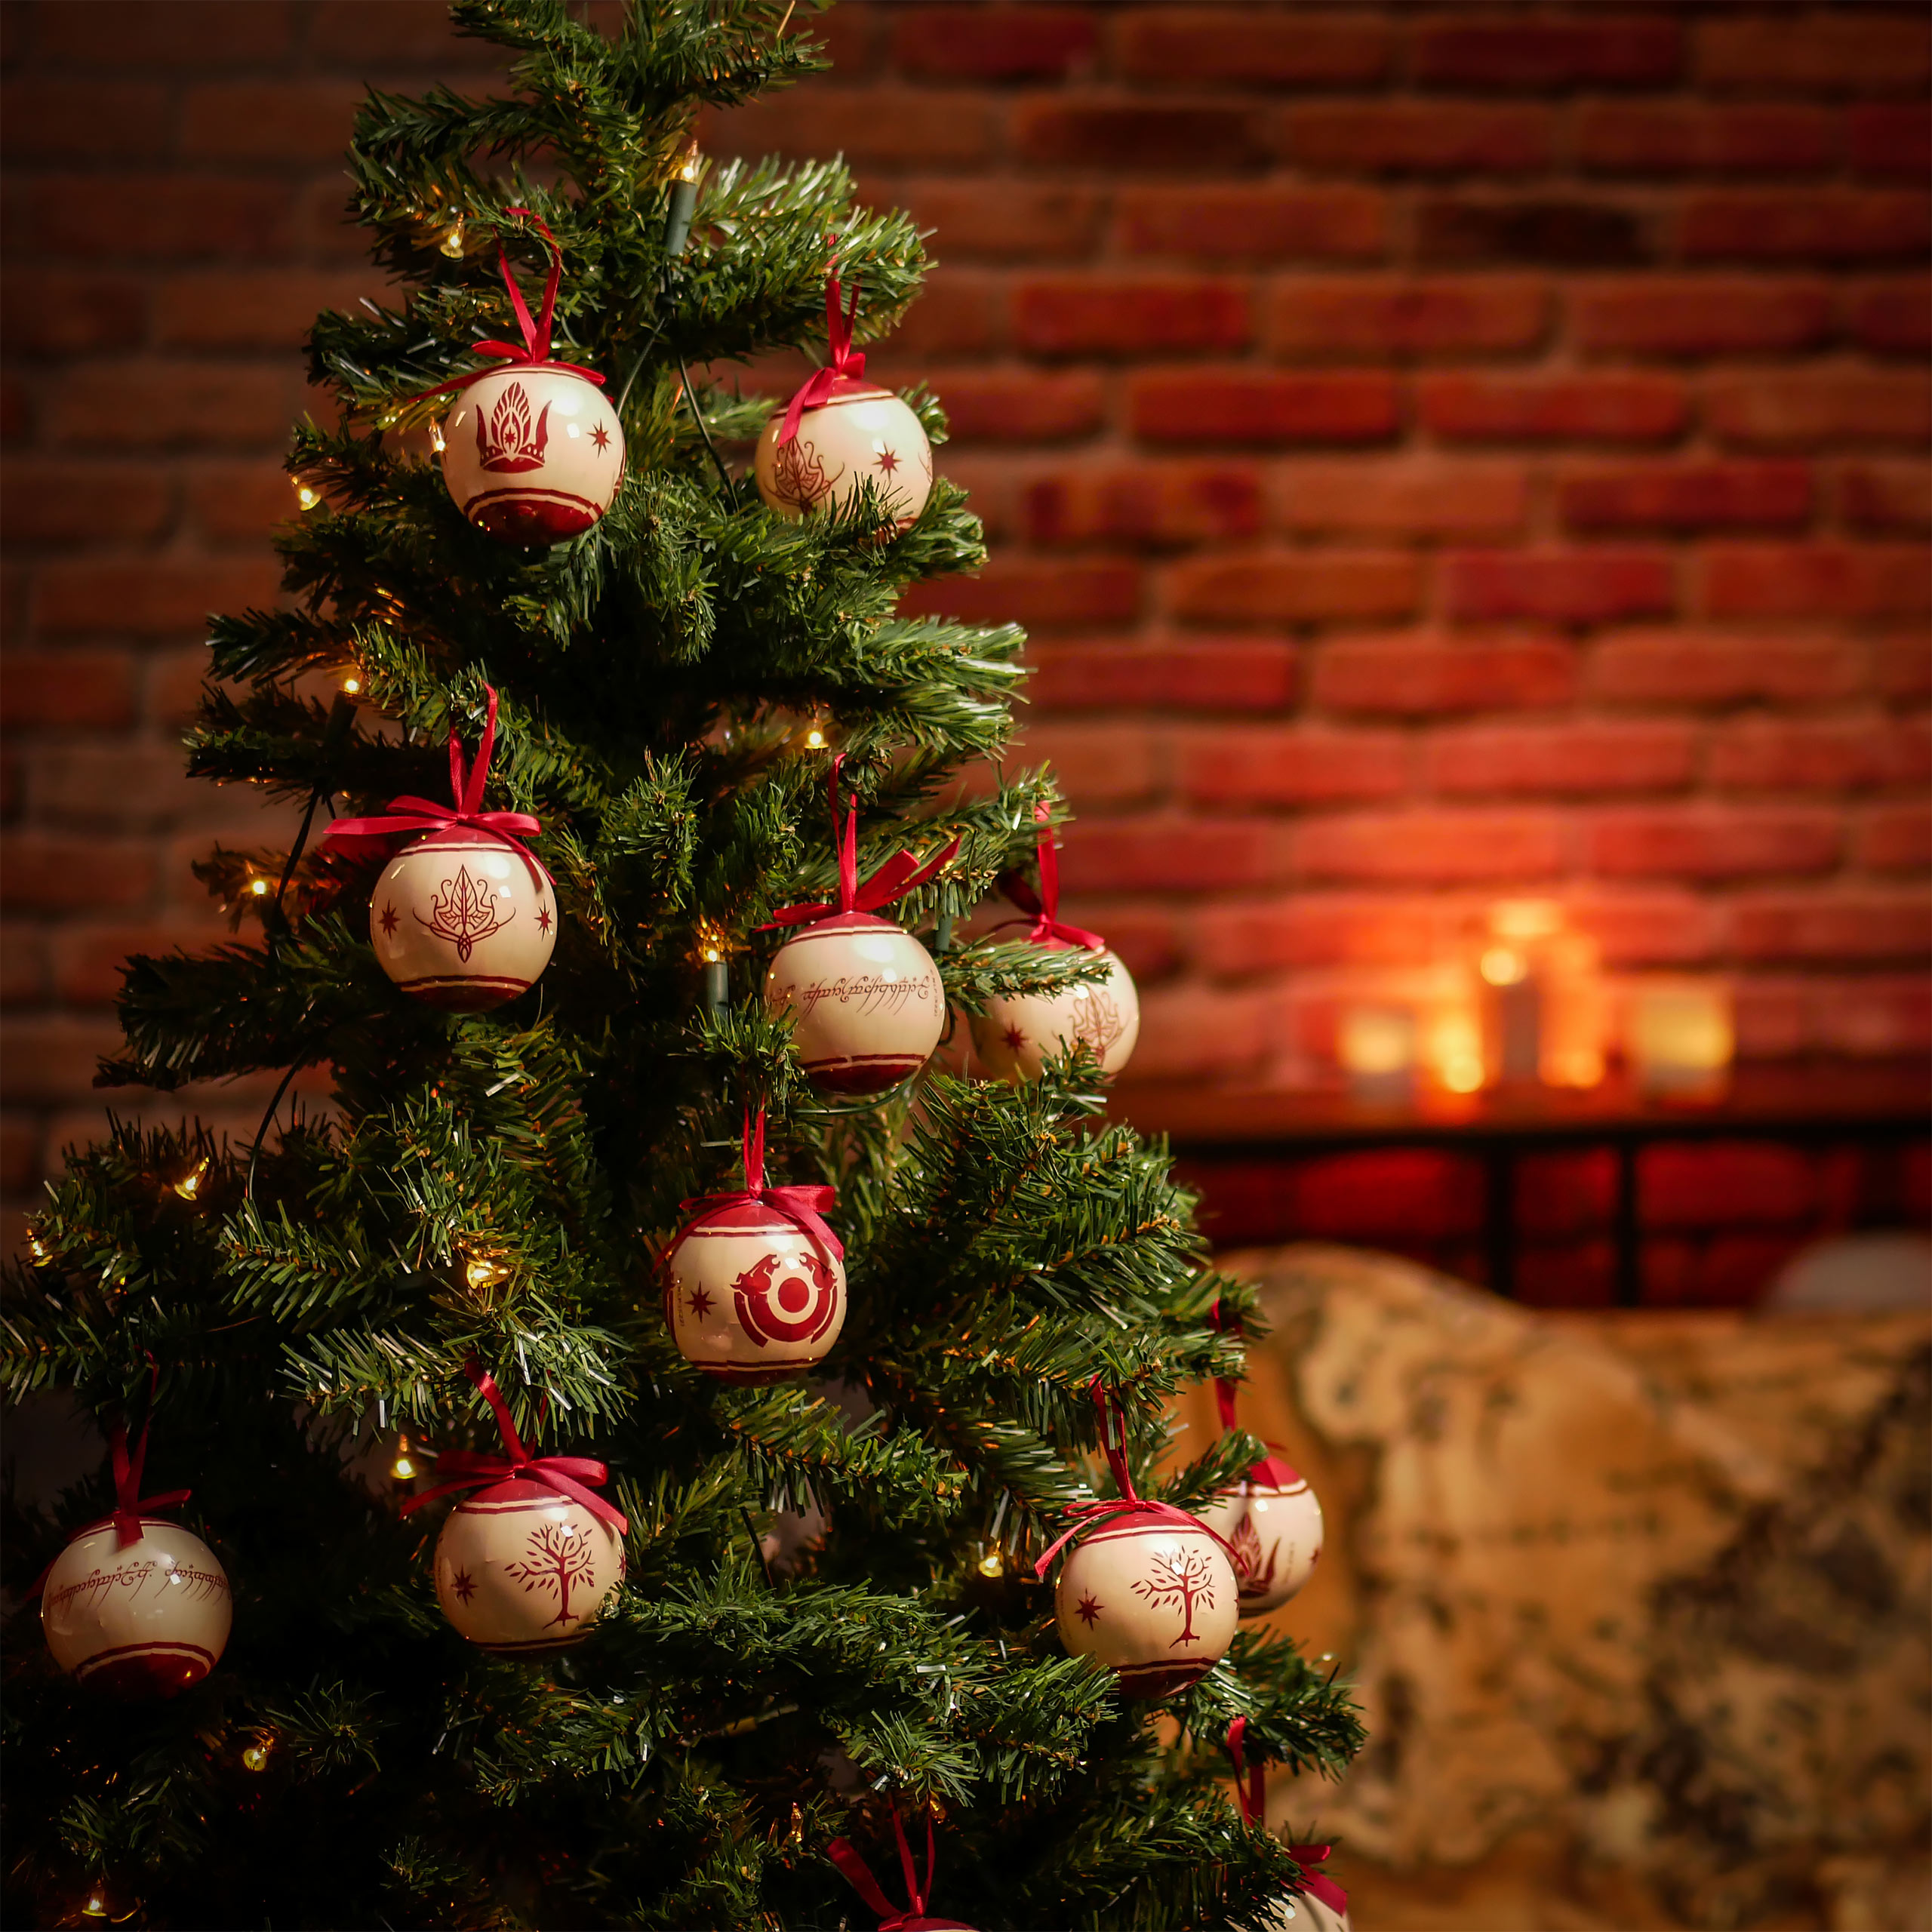 Herr der Ringe - Mittelerde Symbole Weihnachtsbaumkugeln 14tlg